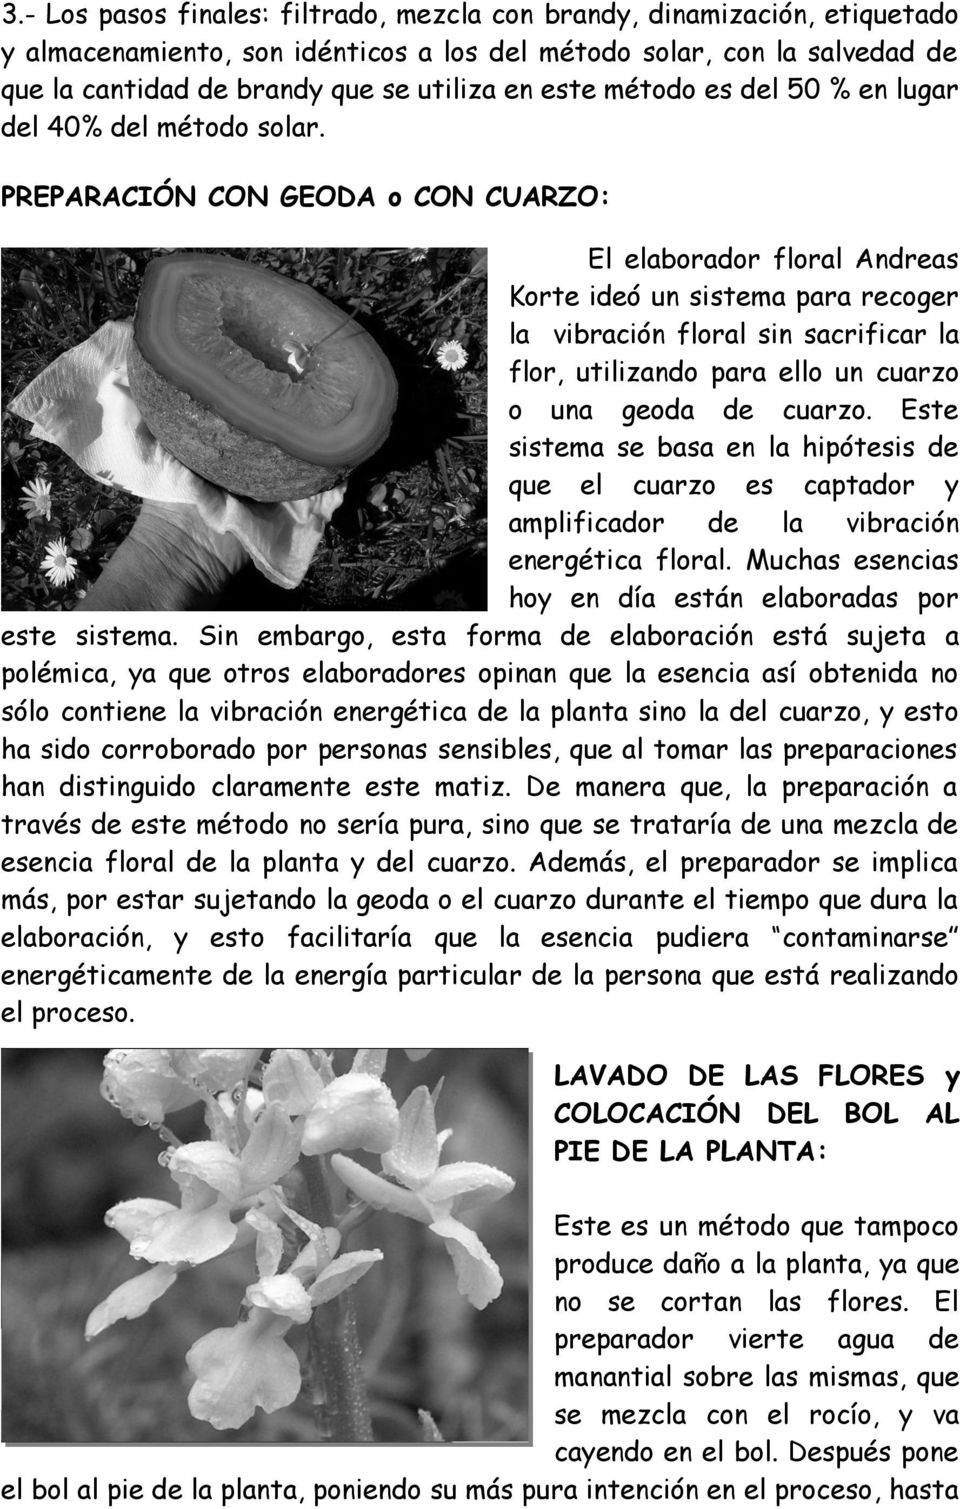 PREPARACIÓN CON GEODA o CON CUARZO: El elaborador floral Andreas Korte ideó un sistema para recoger la vibración floral sin sacrificar la flor, utilizando para ello un cuarzo o una geoda de cuarzo.